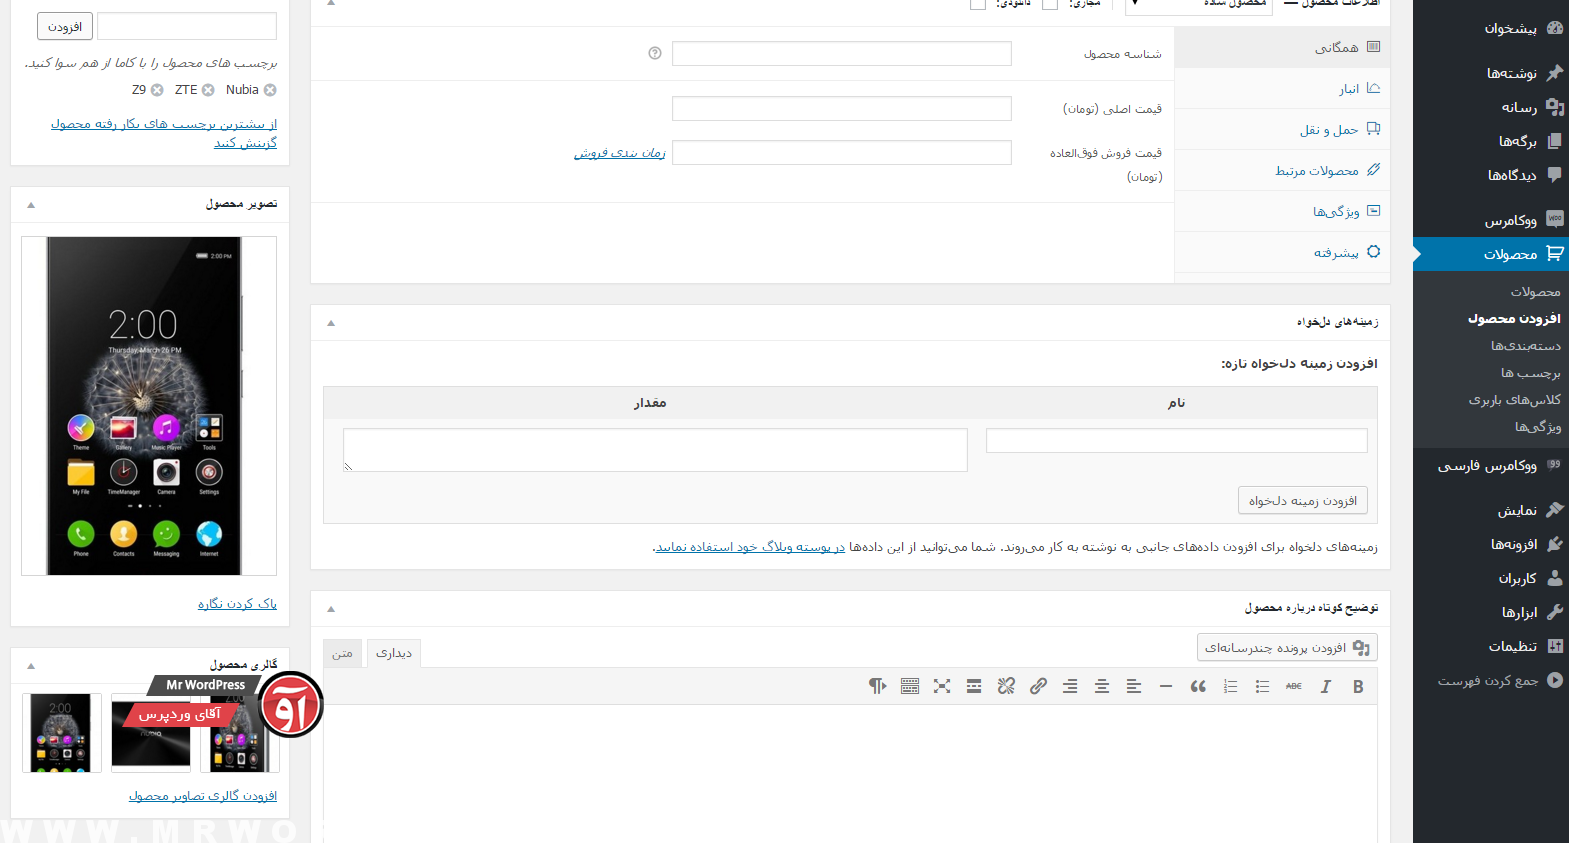 آموزش ارسال محصول در ووکامرس فارسی WooCommerce Farsi